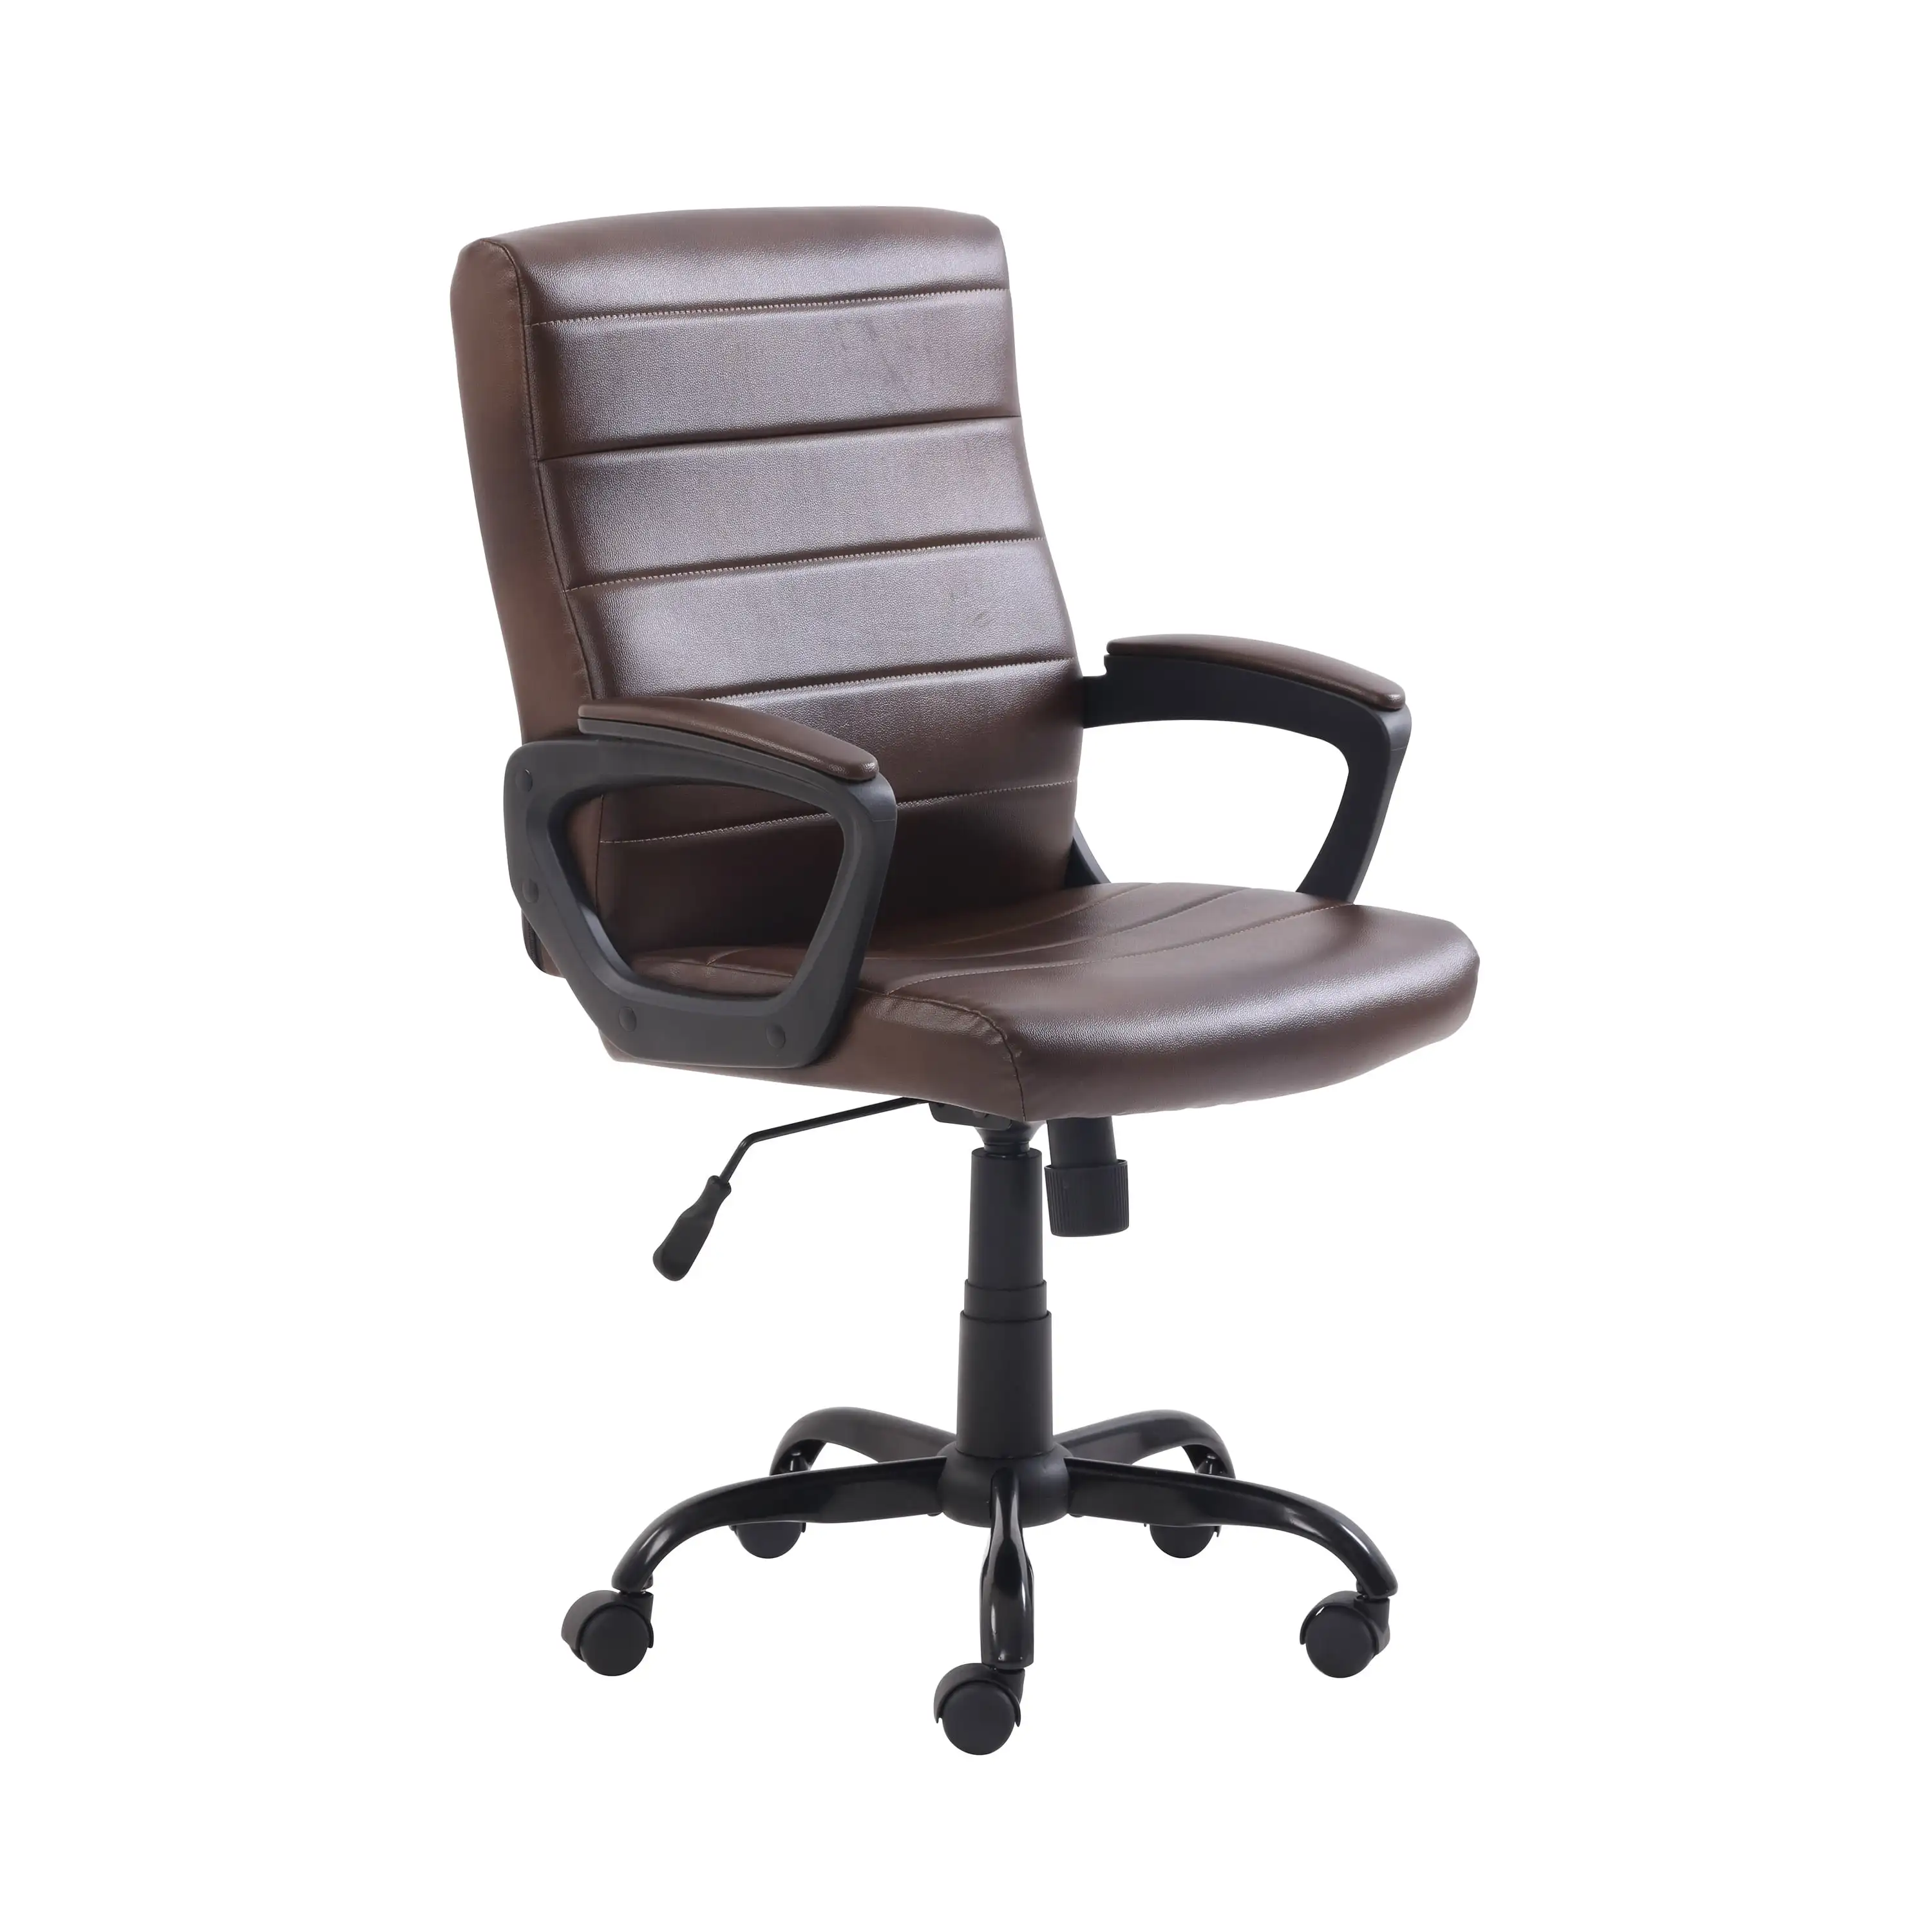 

Офисный стул средней спинки mainstay с подлокотниками, из натуральной кожи, коричневое настольное кресло, офисная мебель, компьютерное кресло Muebles